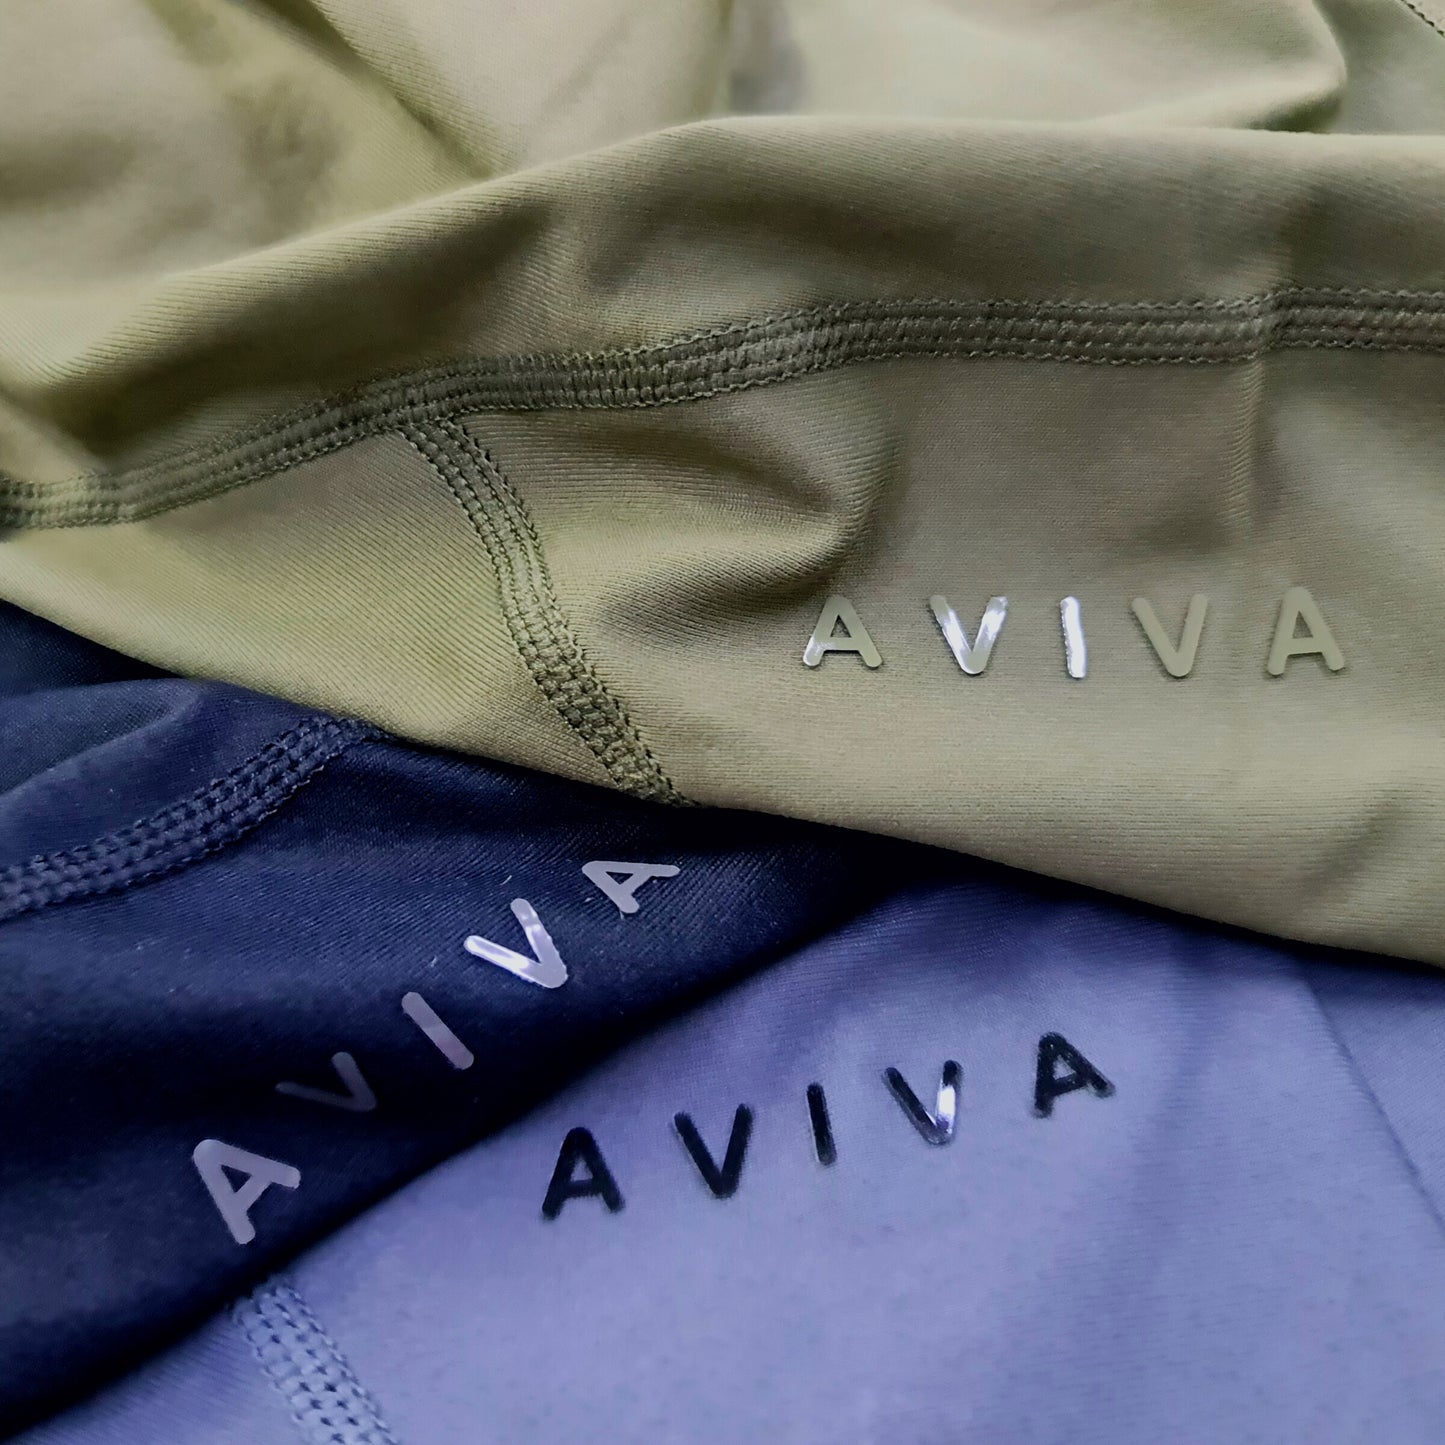 AVIVA Active Sportwear Long Leggings (81-4206)